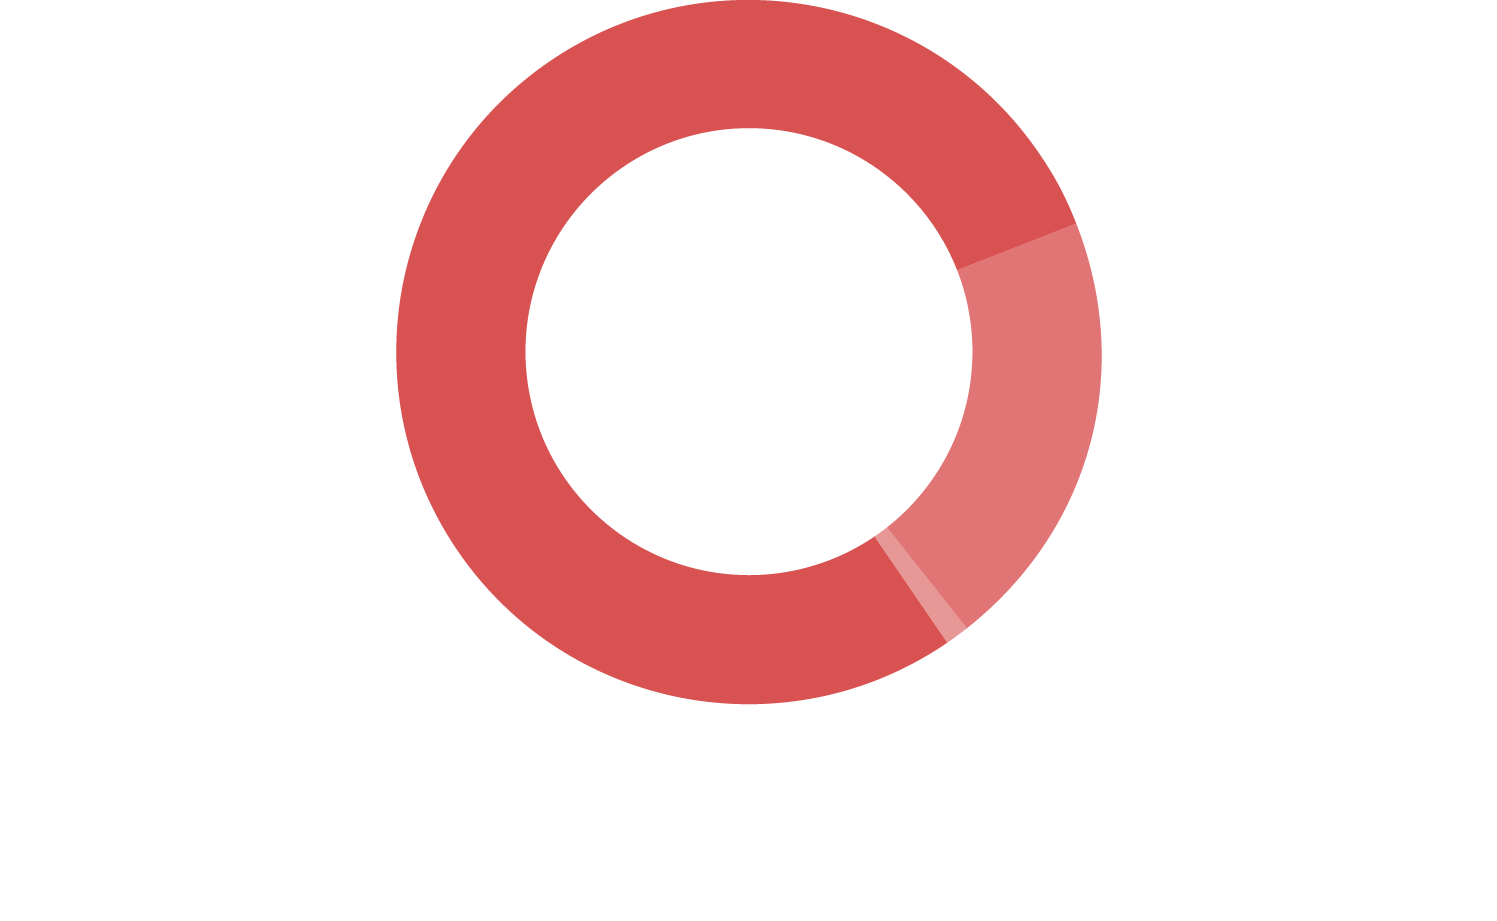 Gráfico em pizza com as informações de fontes de financiamento do InternetLab em 2017. Sendo 78,7% vindo de fundações e organizações do terceiro setor internacionais, 20,4% do setor privado e 0,9% de pessoas físicas.